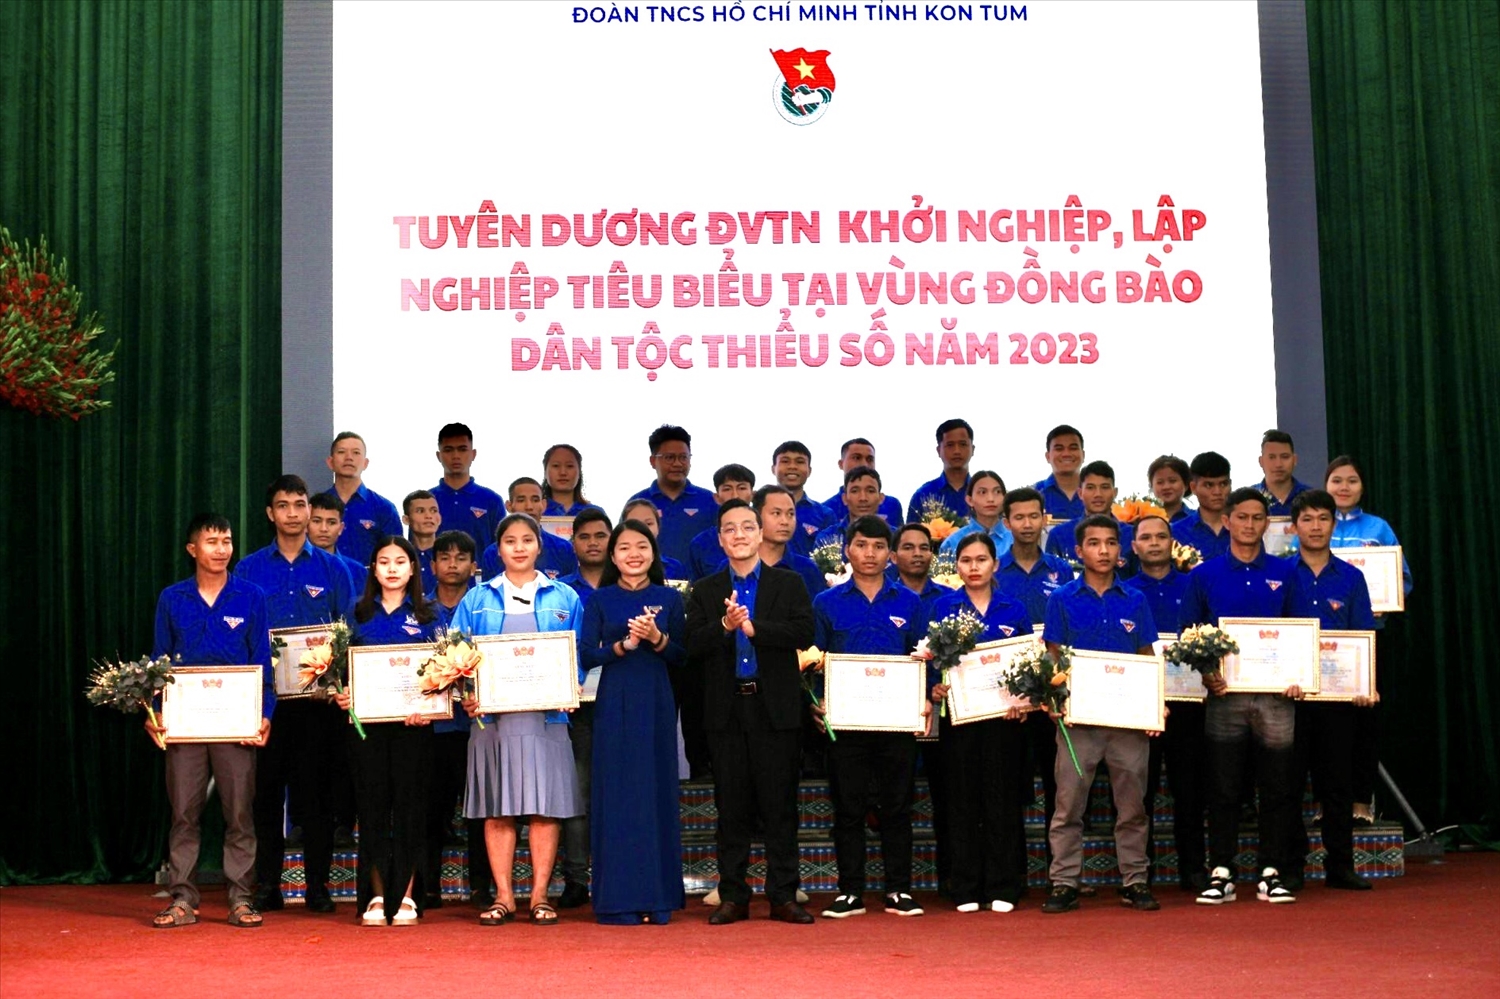 Tỉnh đoàn Kon Tum tặng Bằng khen 28 đoàn viên thanh niên khởi nghiệp, lập nghiệp tiêu biểu tại vùng đồng bào DTTS